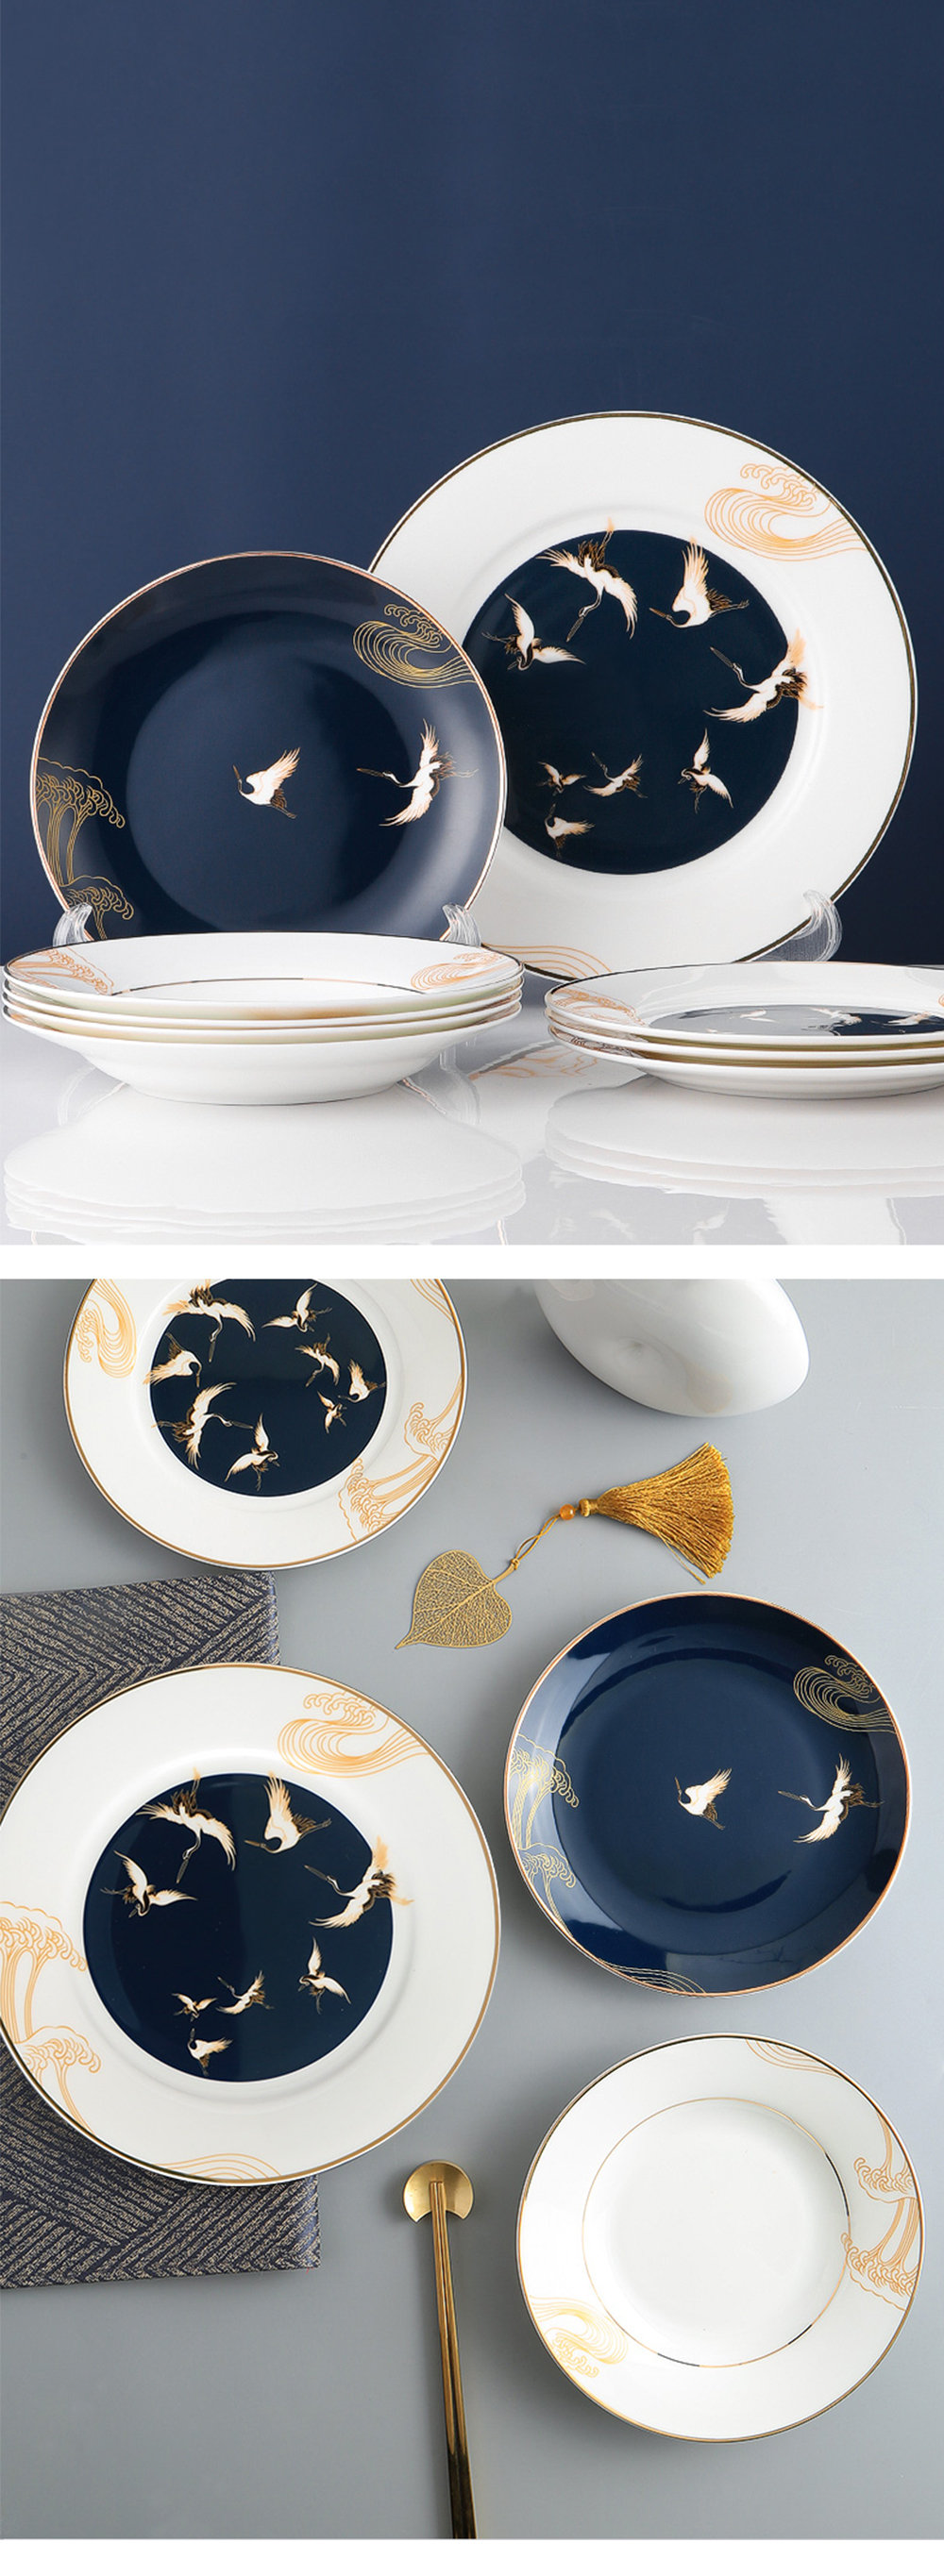 L'Objet Zen Bonsai Blue and Gold Dessert Plate, Set of 4